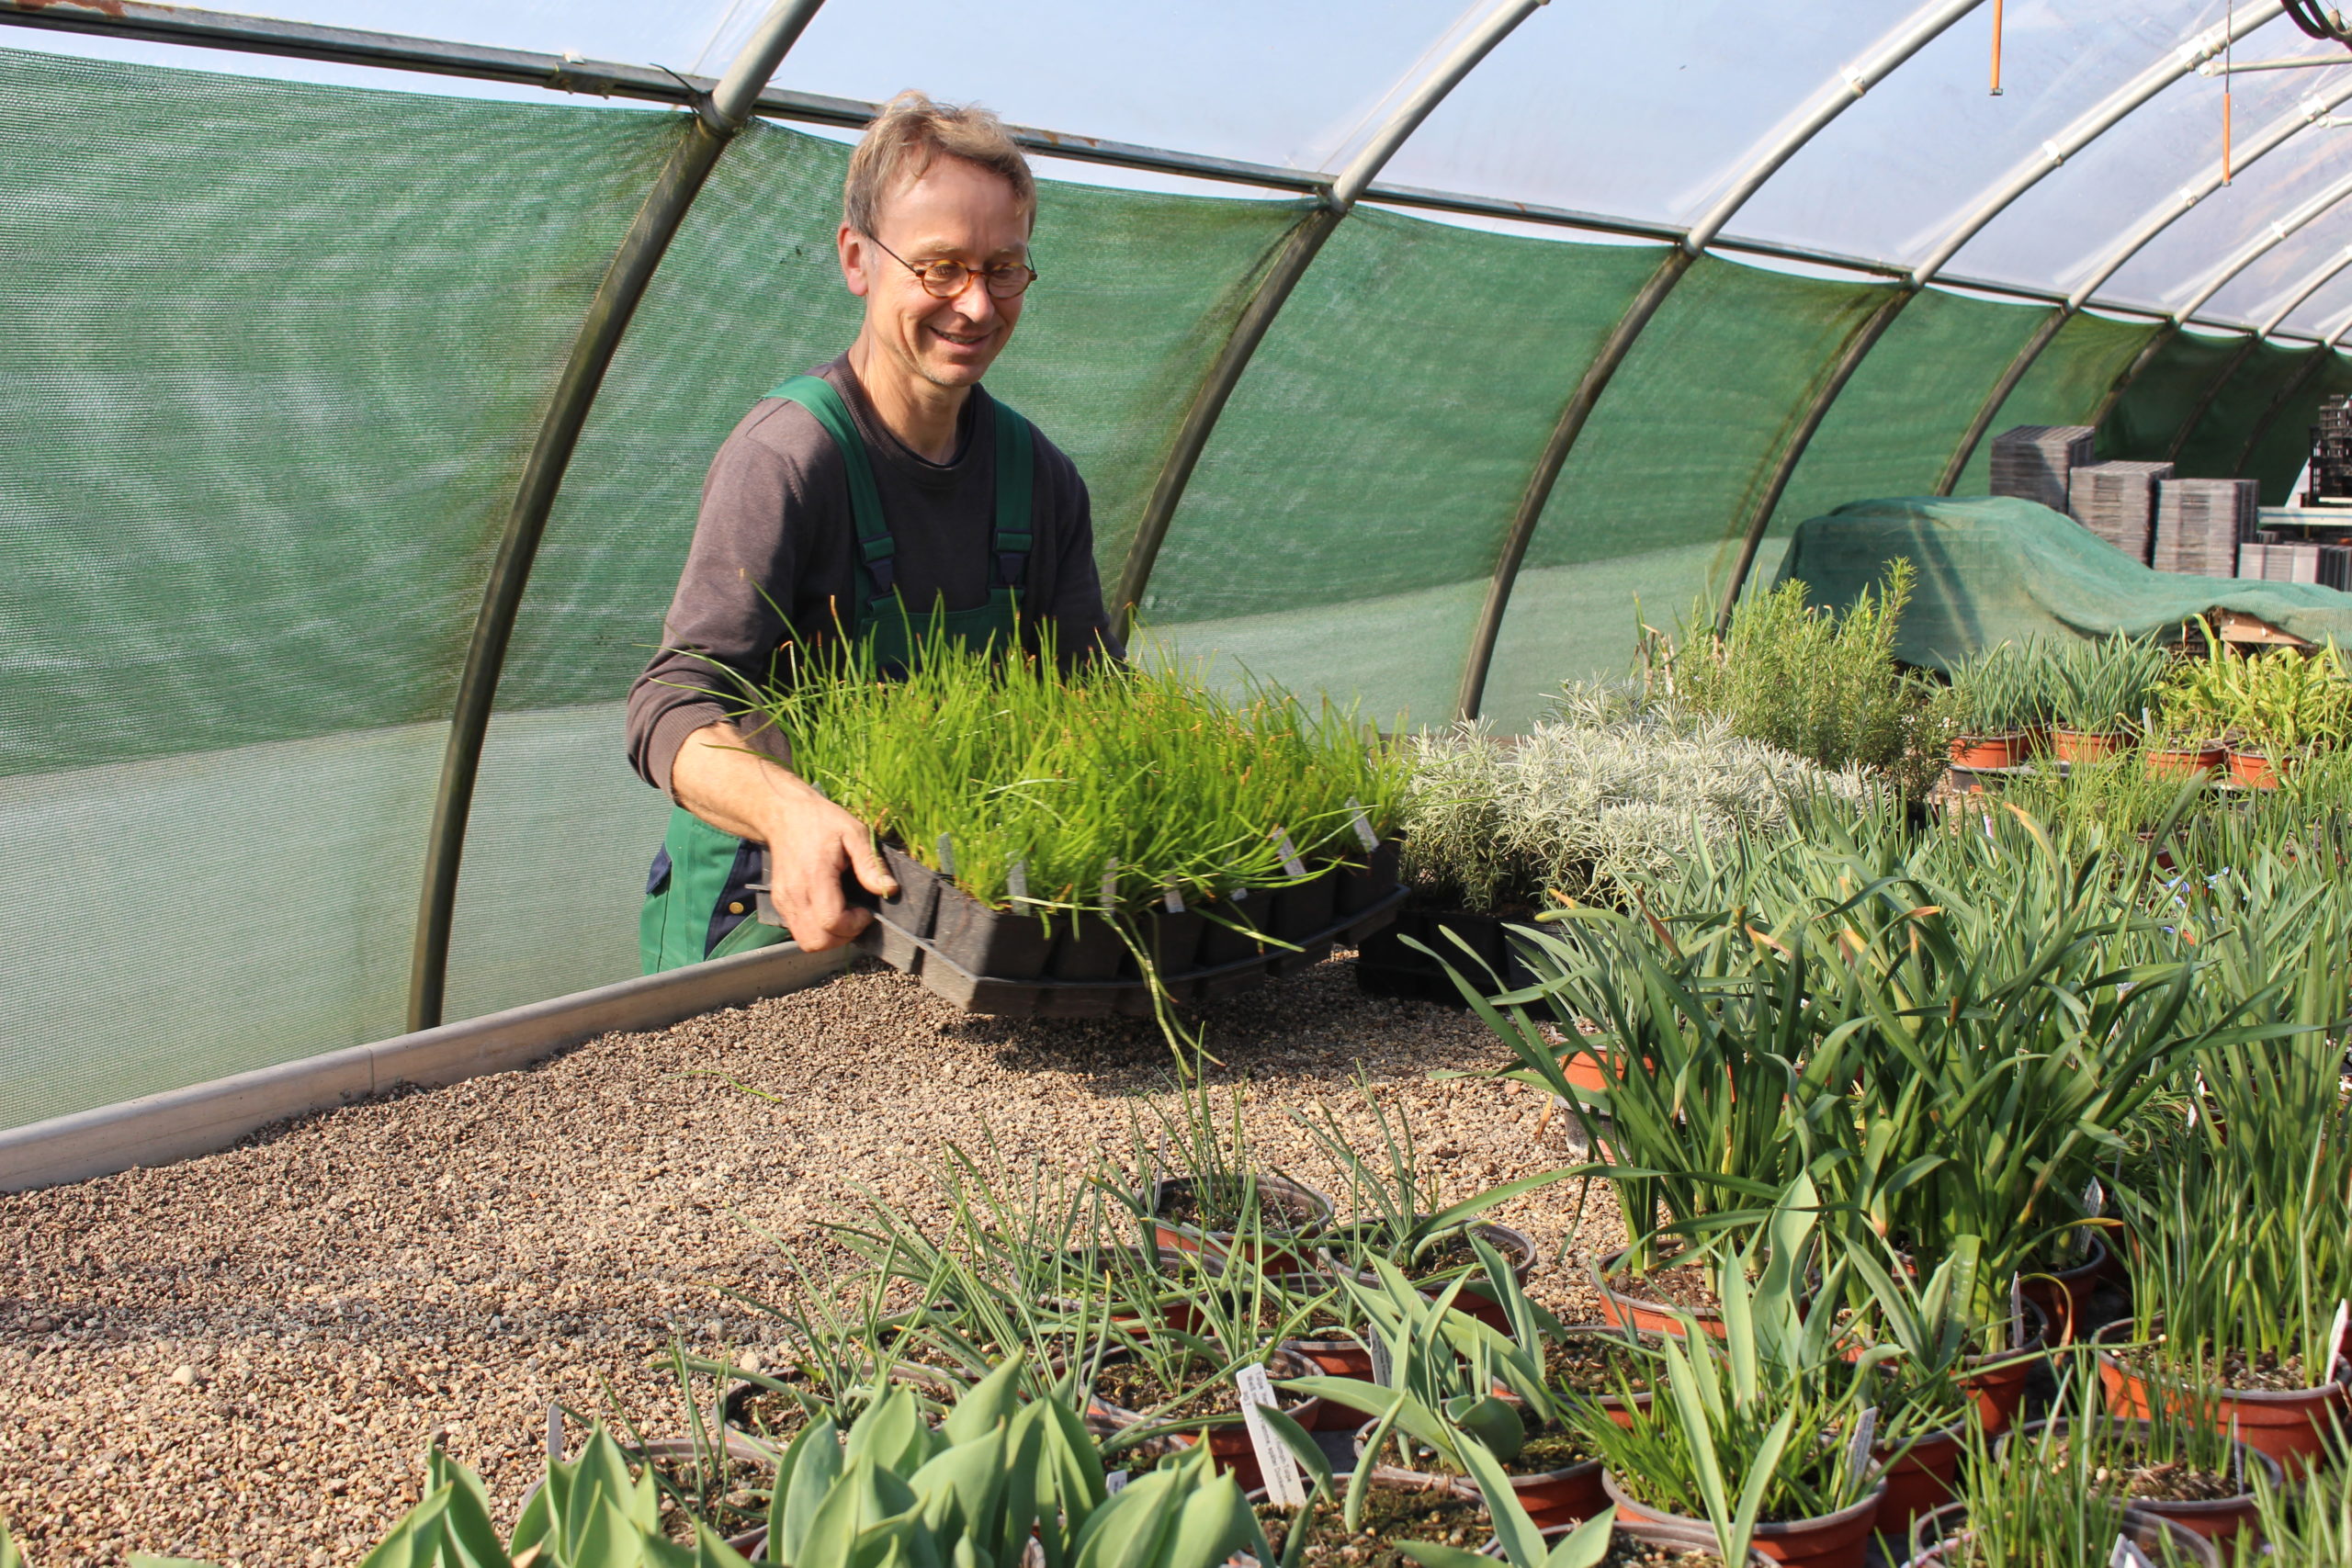 Stefan Huthmann steht in grüner Schürze in einem Gewächshaus, umgeben von einer Vielzahl an Pflanzen in Töpfen und hält ein Tablett mit Schnittlauch.